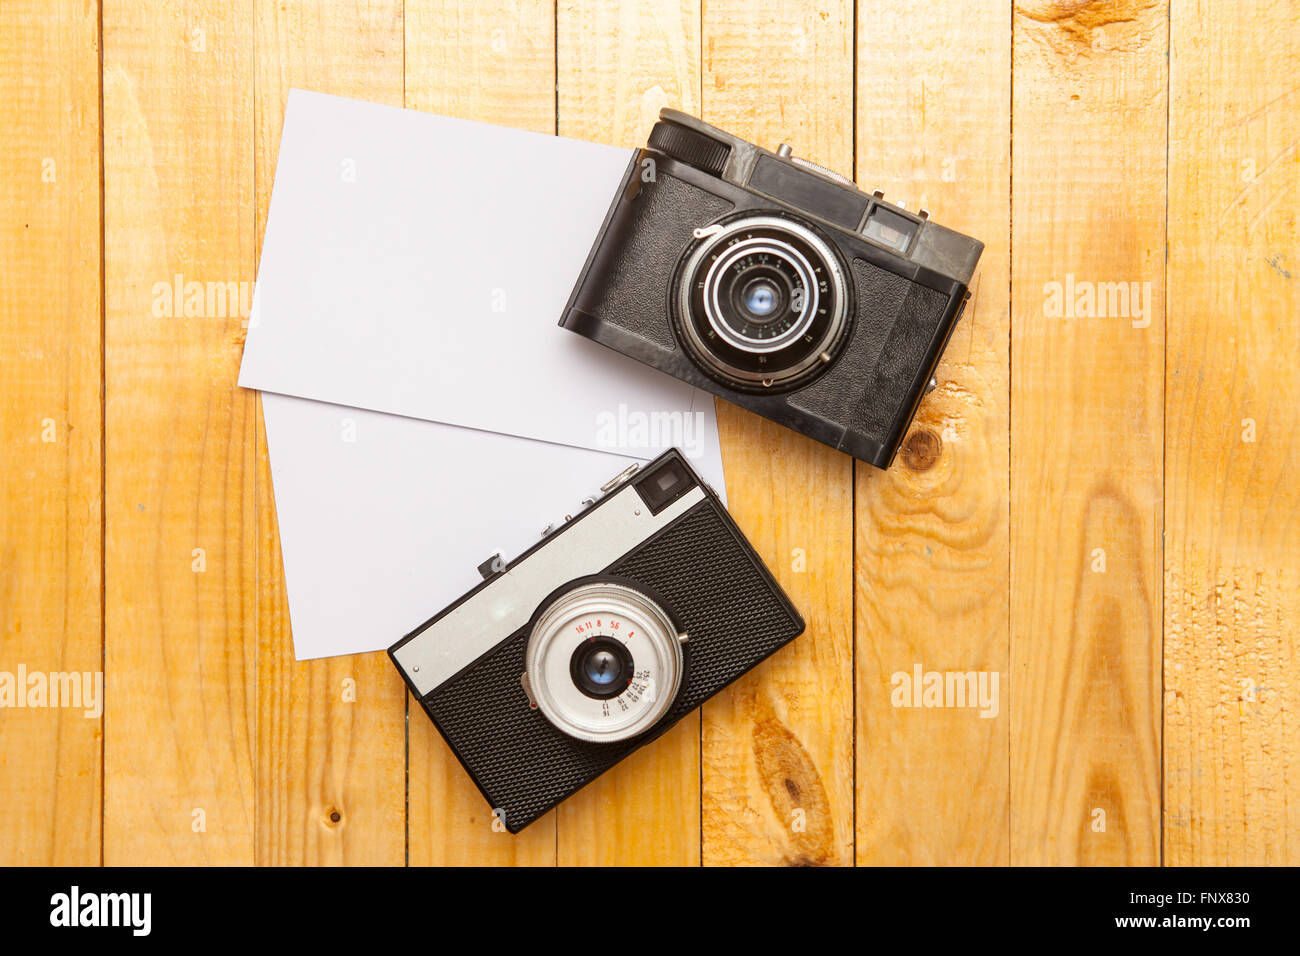 Vecchia macchina fotografica con una foto su uno sfondo di legno Foto Stock